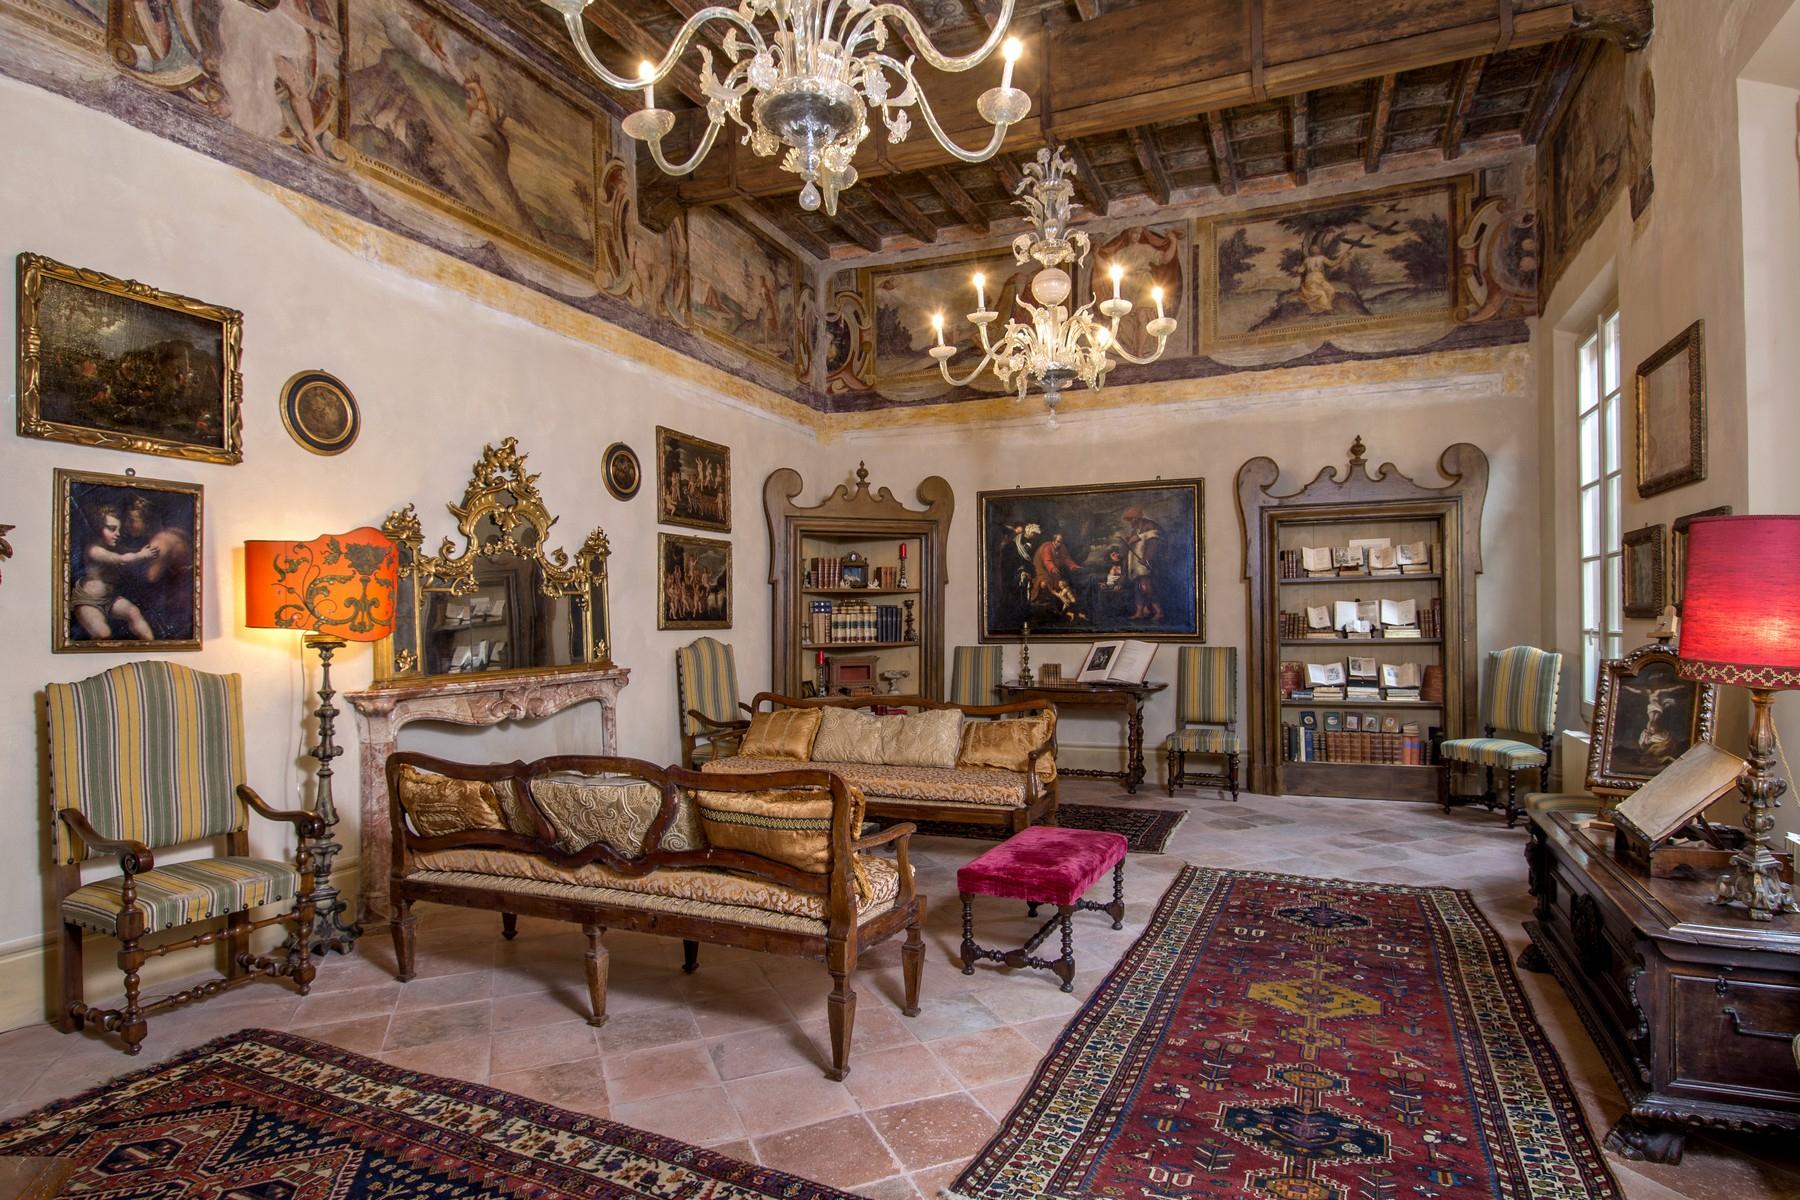 Magnificent historic palace in the heart of Reggio Emilia - 1